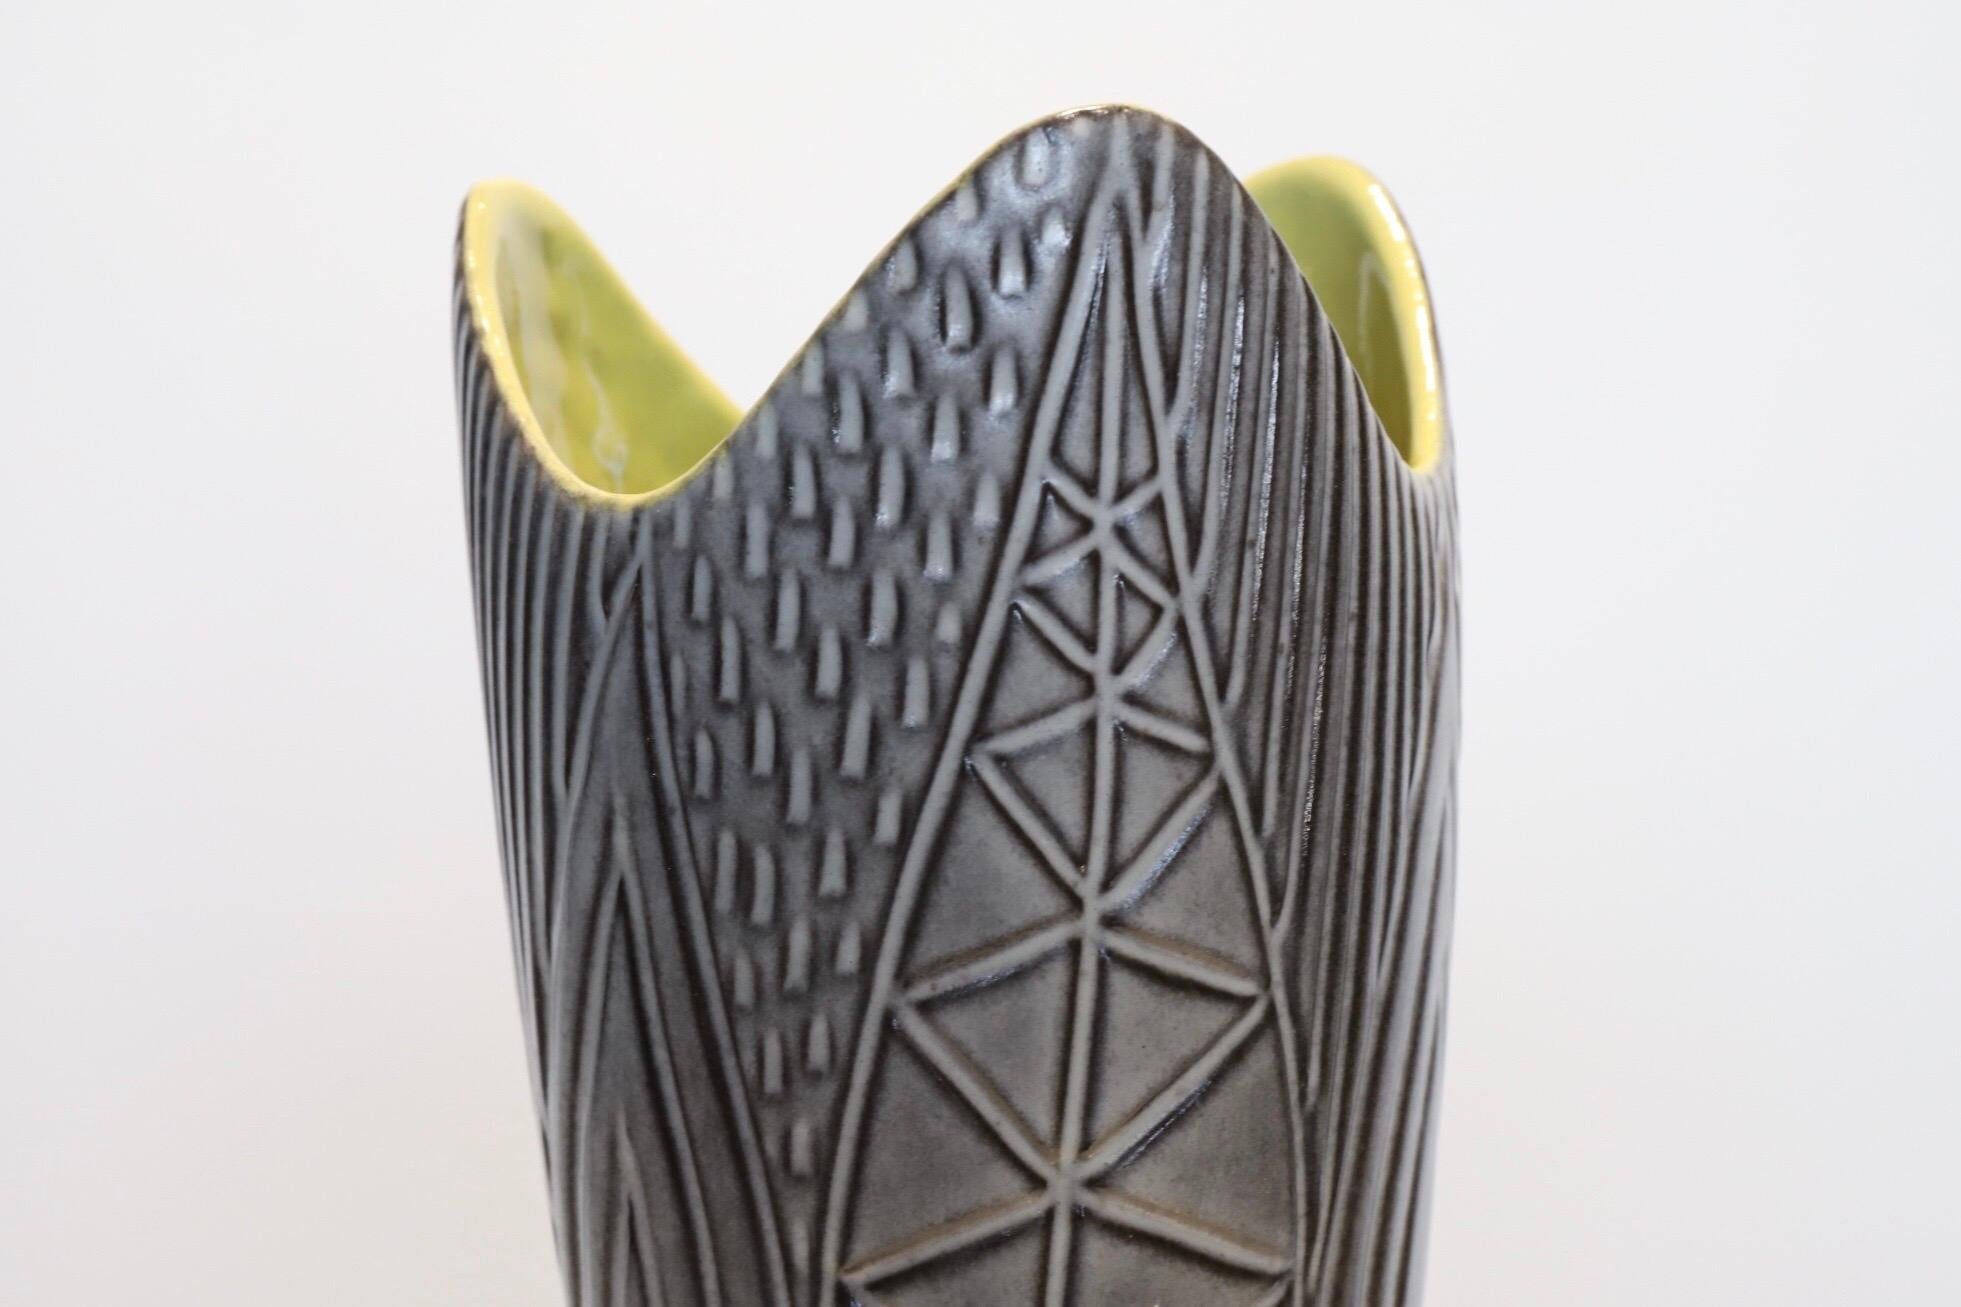 Superbe vase émaillé bicolore de Mari Simmulson pour Upsala-Ekeby. Vitrage extérieur gris, intérieur vert jaunâtre.

Photographié avec une chaise Bertoia et un fauteuil Eames LTW pour l'échelle.